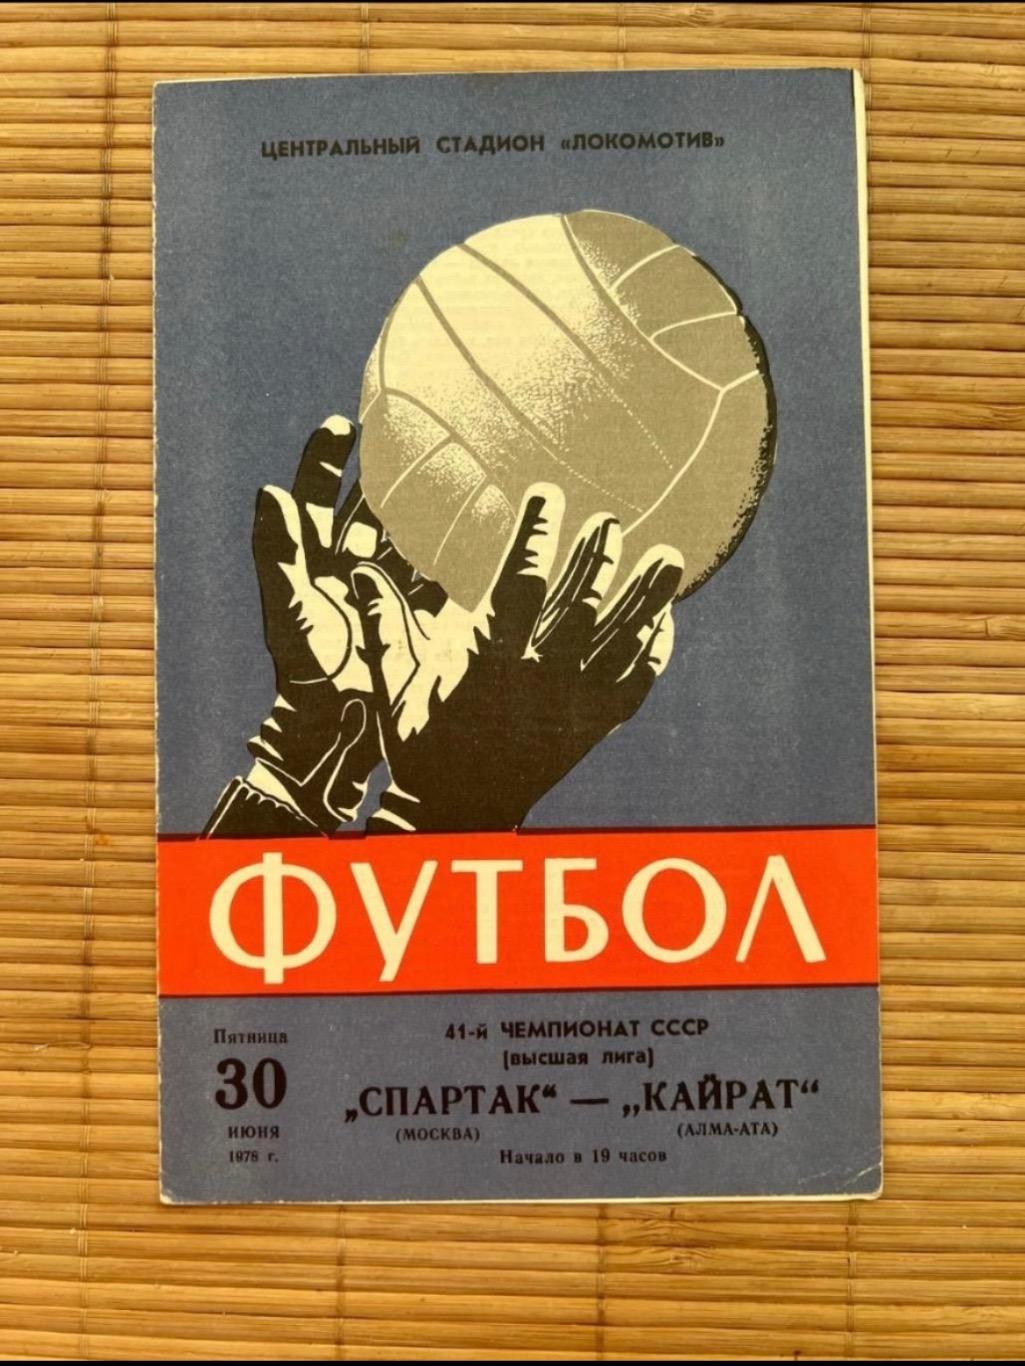 Спартак Москва - кайрат. 30.06.1978